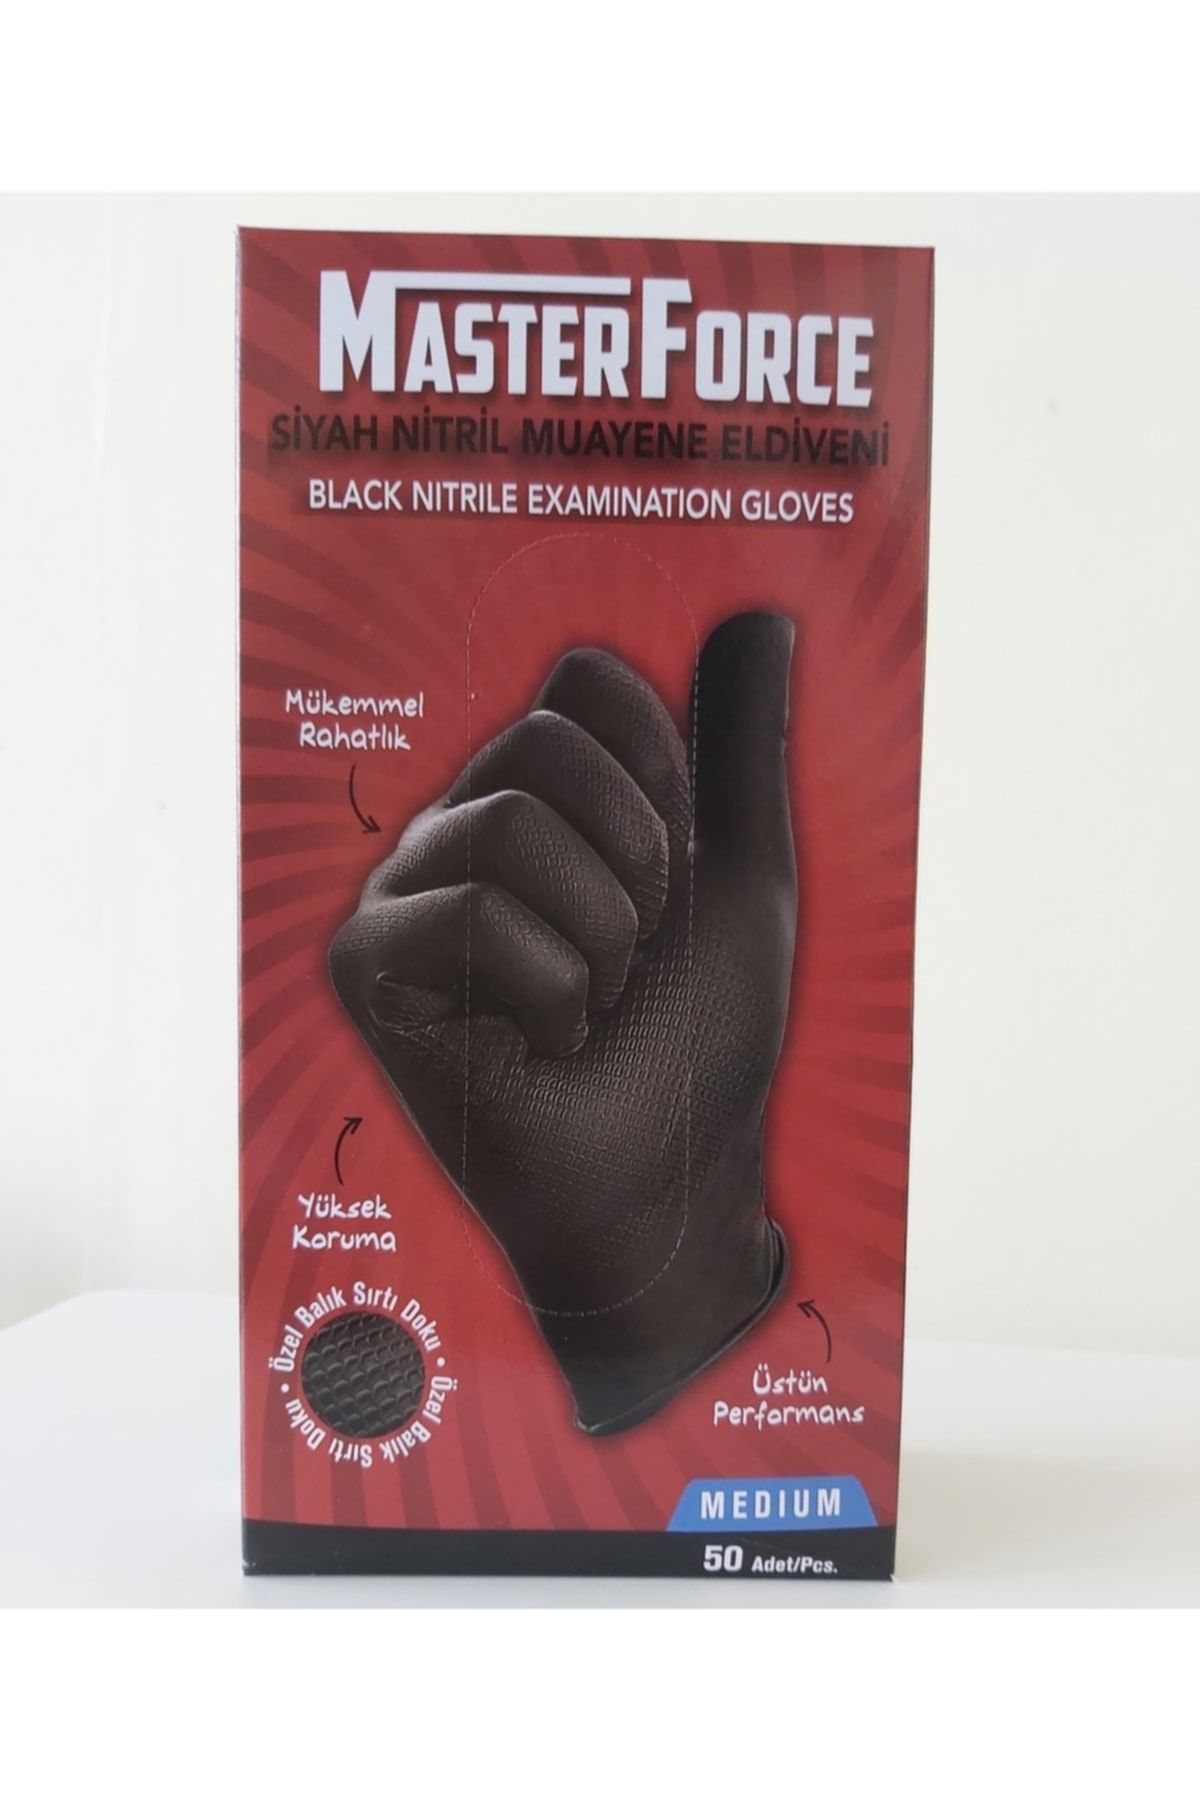 Master Force Siyah Nitril Kalın Eldiven Medıum ( M ) Orta Boy Beden Yeni Ürün - Yeni Paket 2022